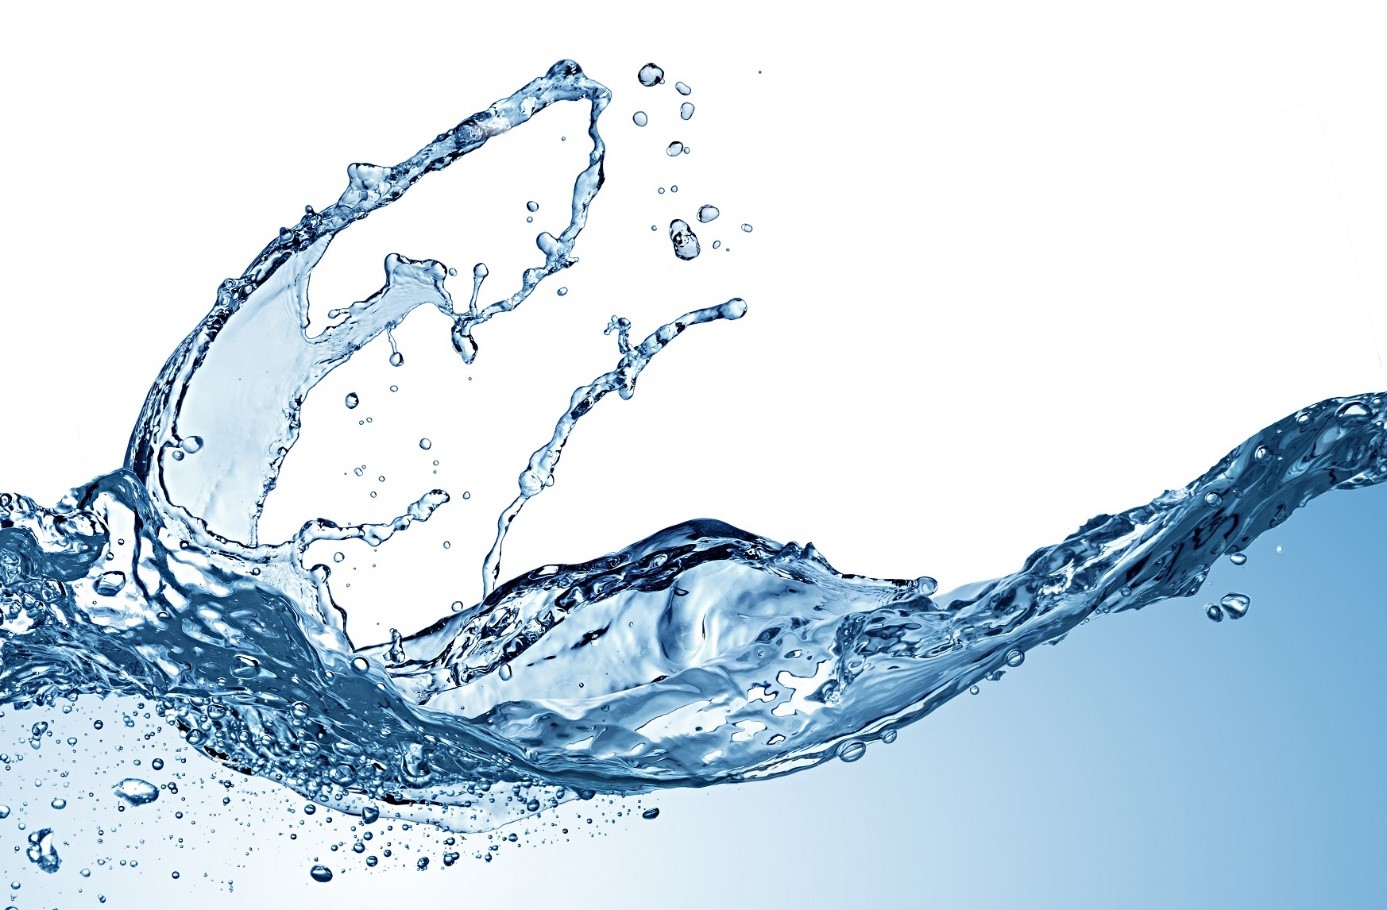 Global X Clean Water ETF (AQWA ETF) försöker investera i företag som främjar tillhandahållandet av rent vatten genom industriell vattenrenings-, lagrings- och distributionsinfrastruktur,